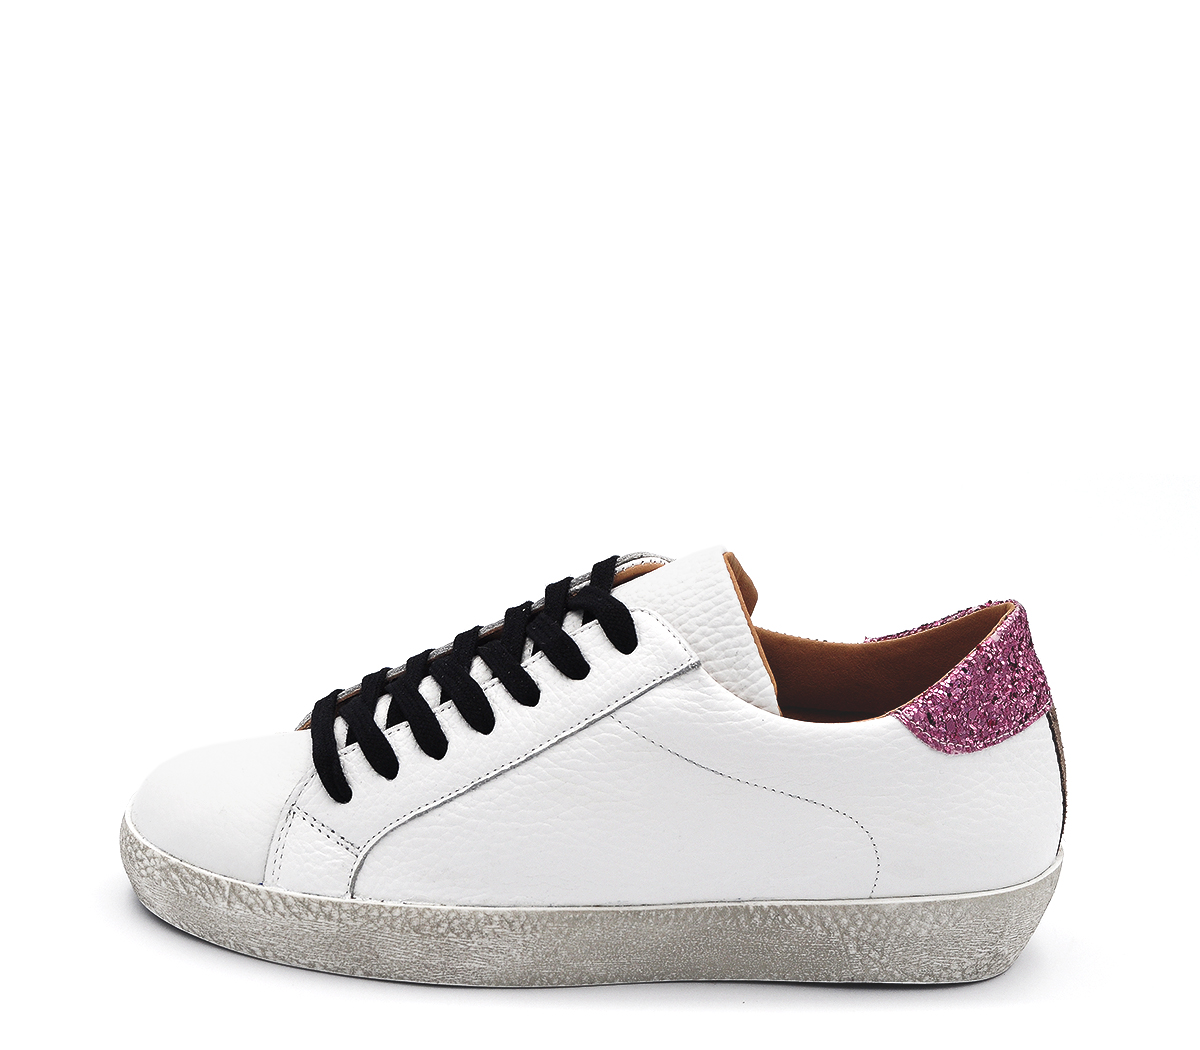 Ref. 6173 Sneaker piel blanca con detalle trasero glitter rosa.Cordones negros. Plataforma de 2.5 cm. Plantilla anatomica con cuña de 2 cm.